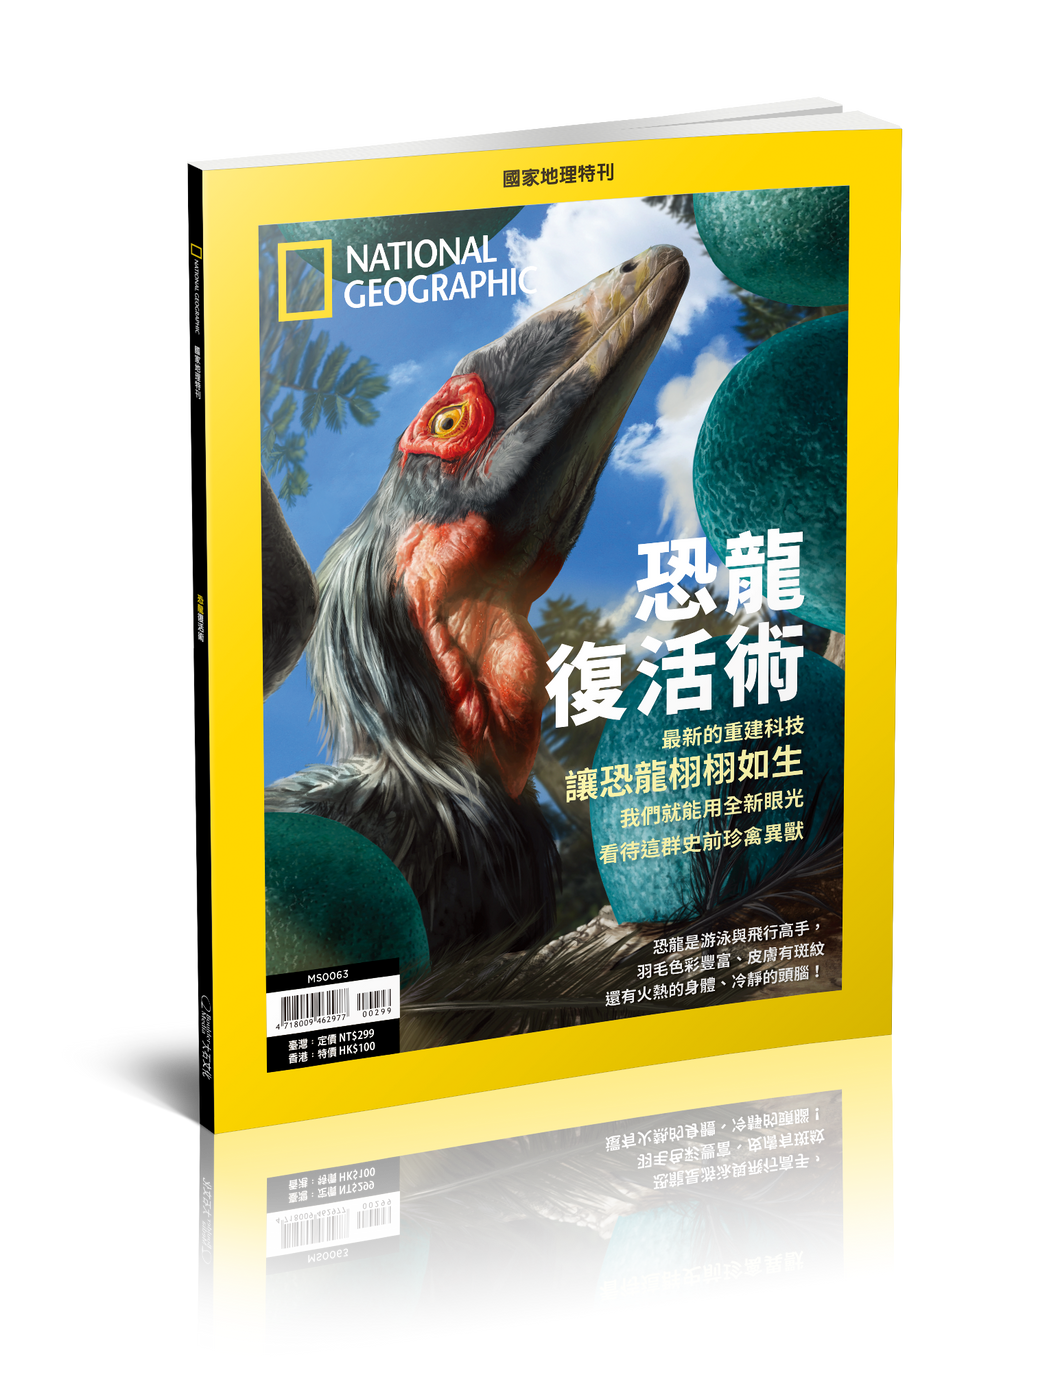 國家地理雜誌 中文版 紙本 訂閱 1年12期 合購 《恐龍復活術》特刊